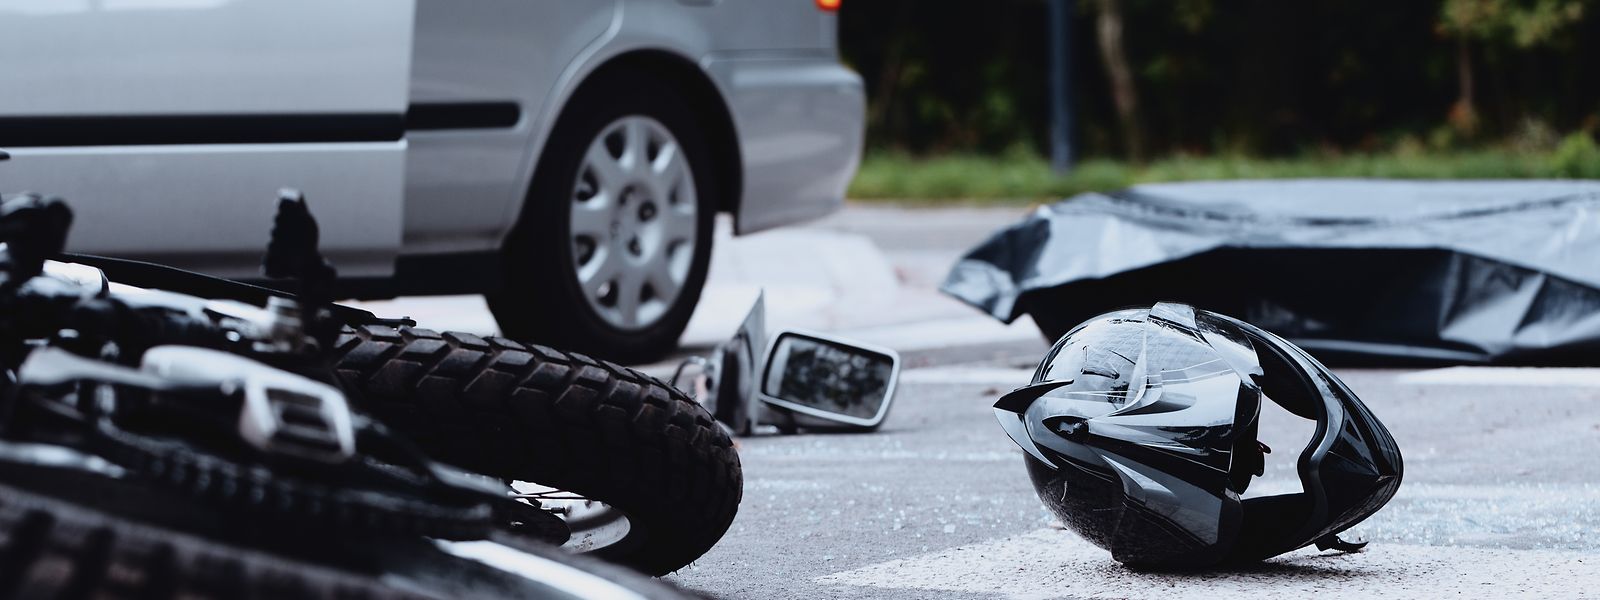 Die Zahl der schweren Unfälle bei Motorradfahrern  war im vergangenen Jahr rückläufig. 